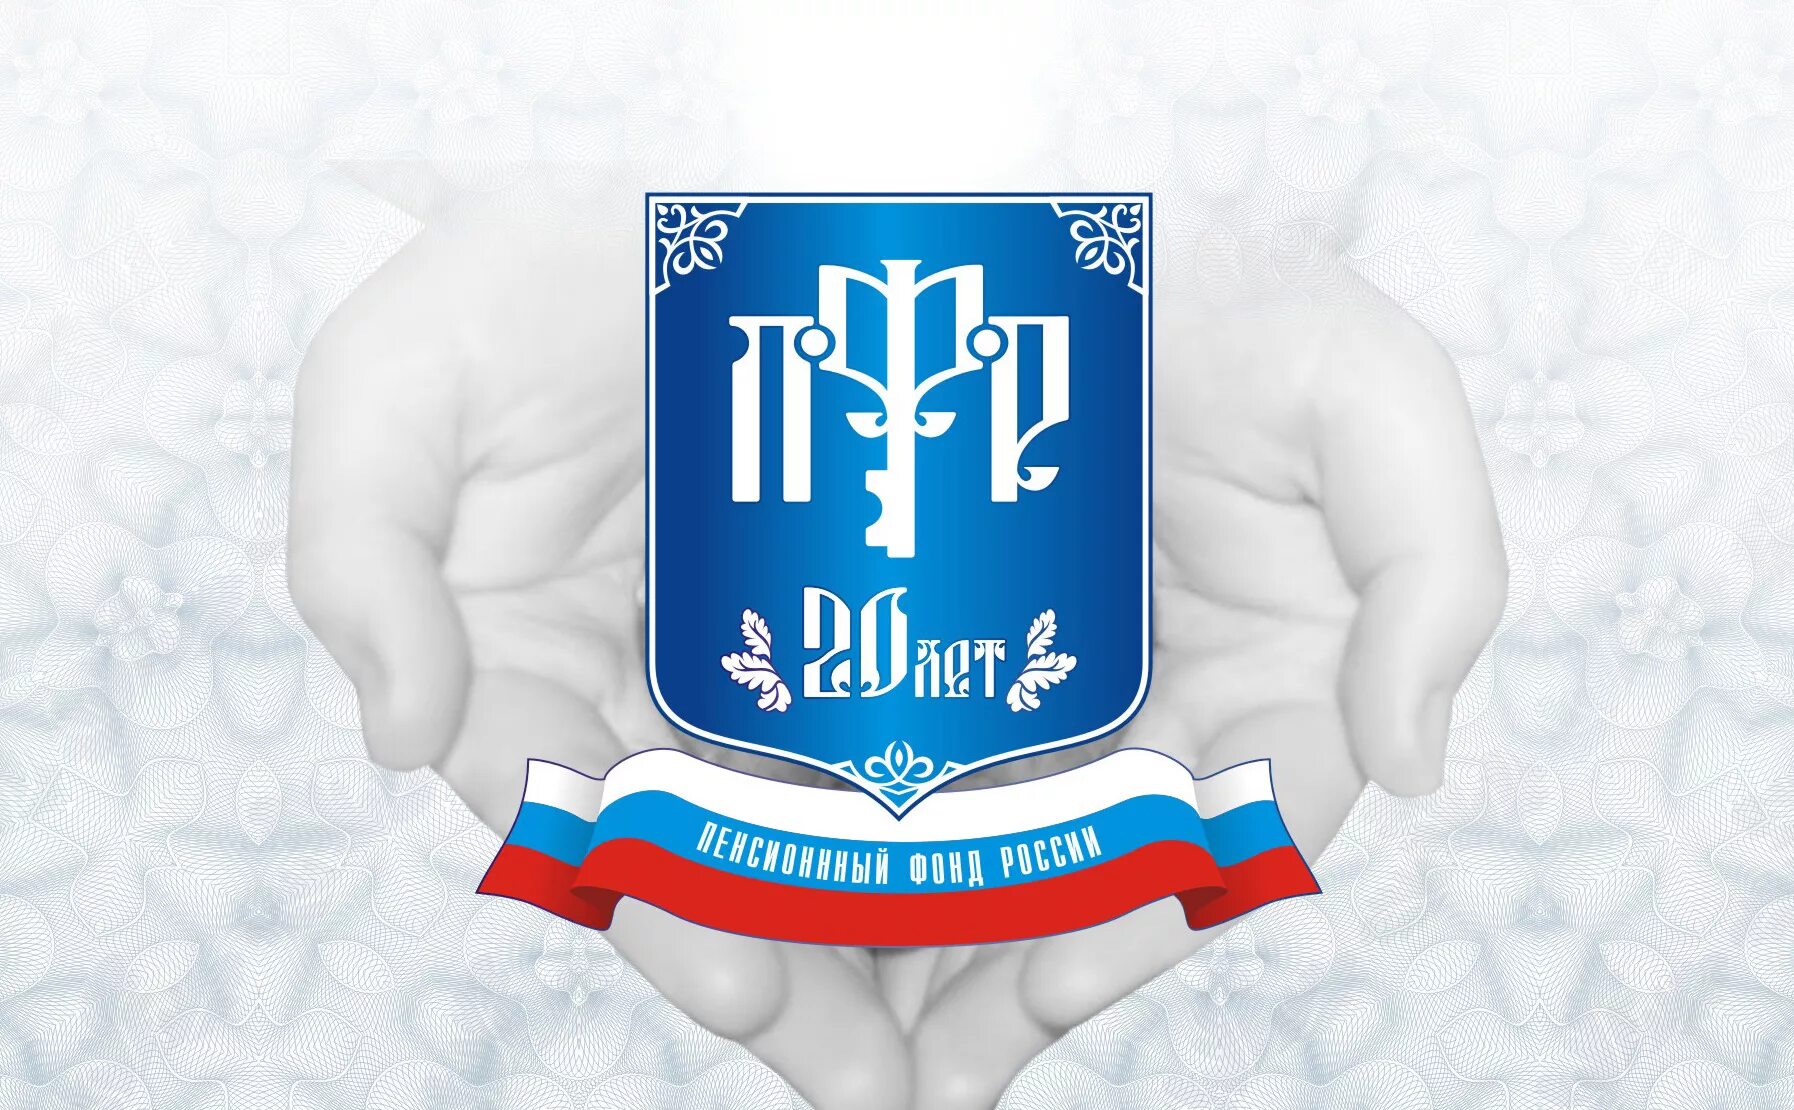 Пенсионный фонд и правительство рф. ПФР. ПФР логотип. ПФР картинки. ПФР (пенсионный фонд России).